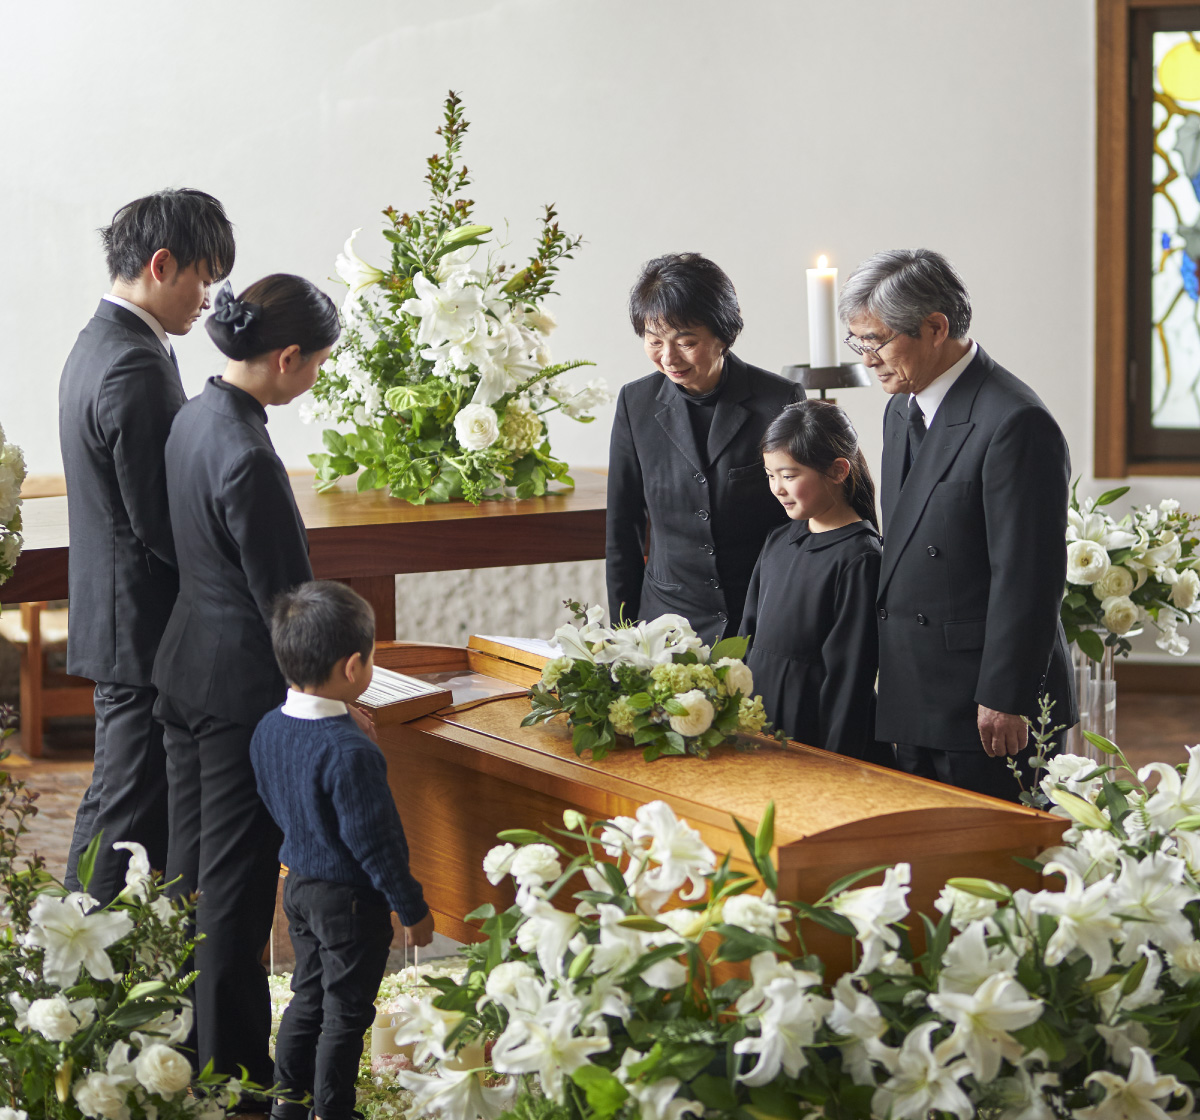 家族葬に参列するかの判断基準やマナーを紹介